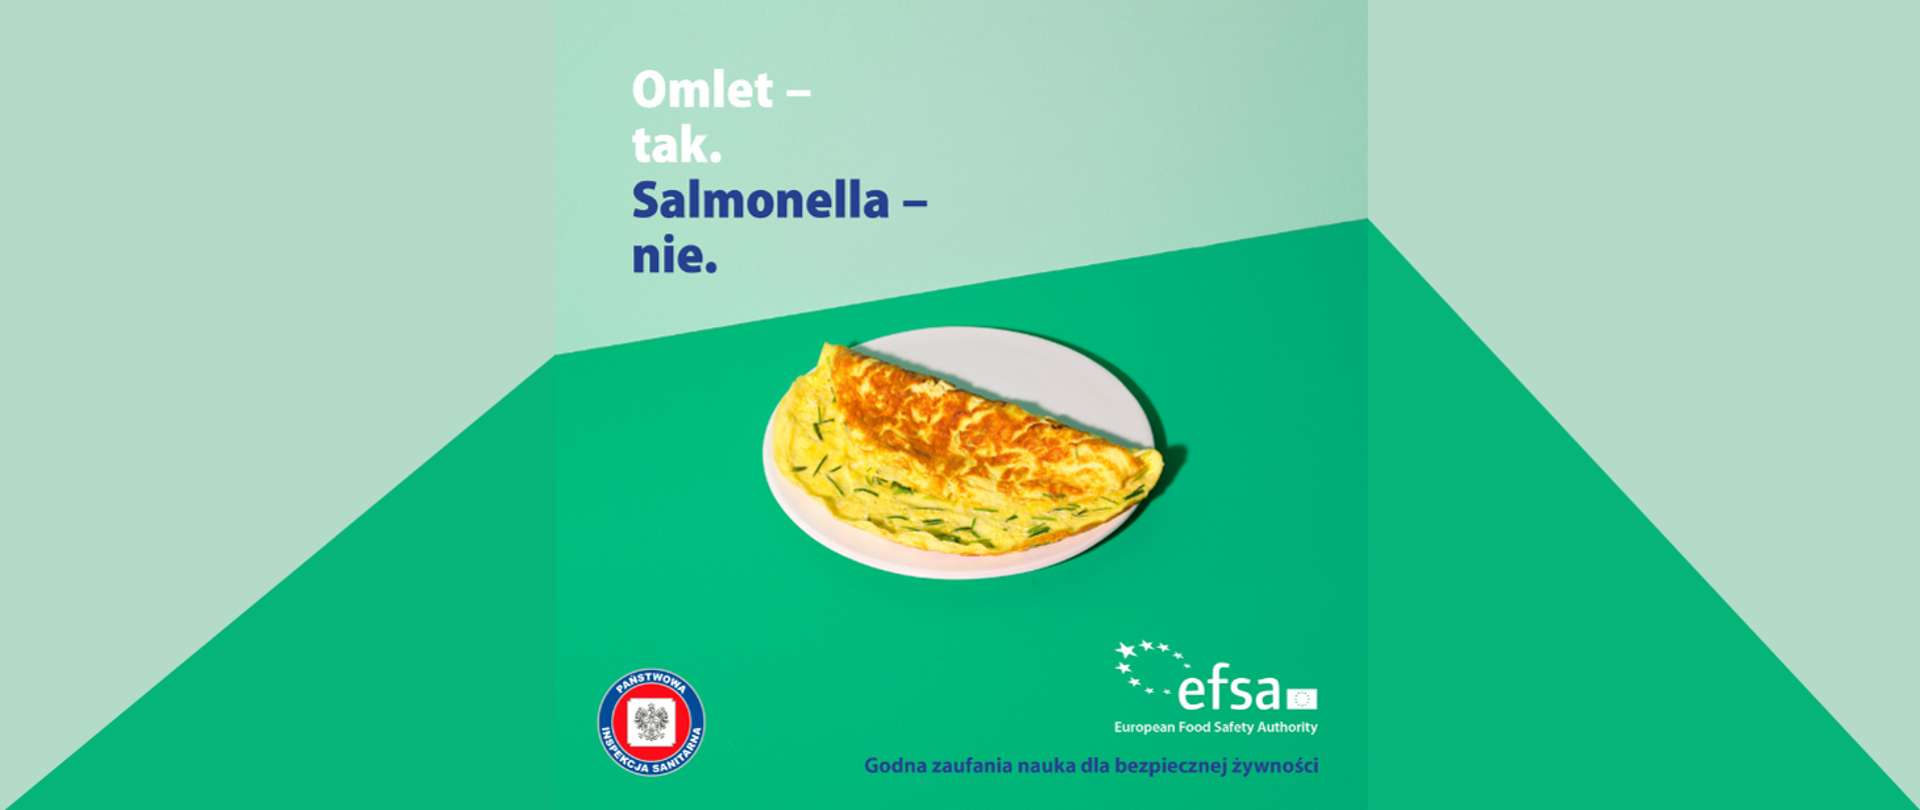 Grafika przedstawia omlet na talerzu z napisem Omlet- tak. Salmonella- nie. Na dole grafiki logo Państwowej Inspekcji Sanitarnej oraz EFS – European Food Safety Authority -Godna zaufania nauka dla bezpiecznej żywności